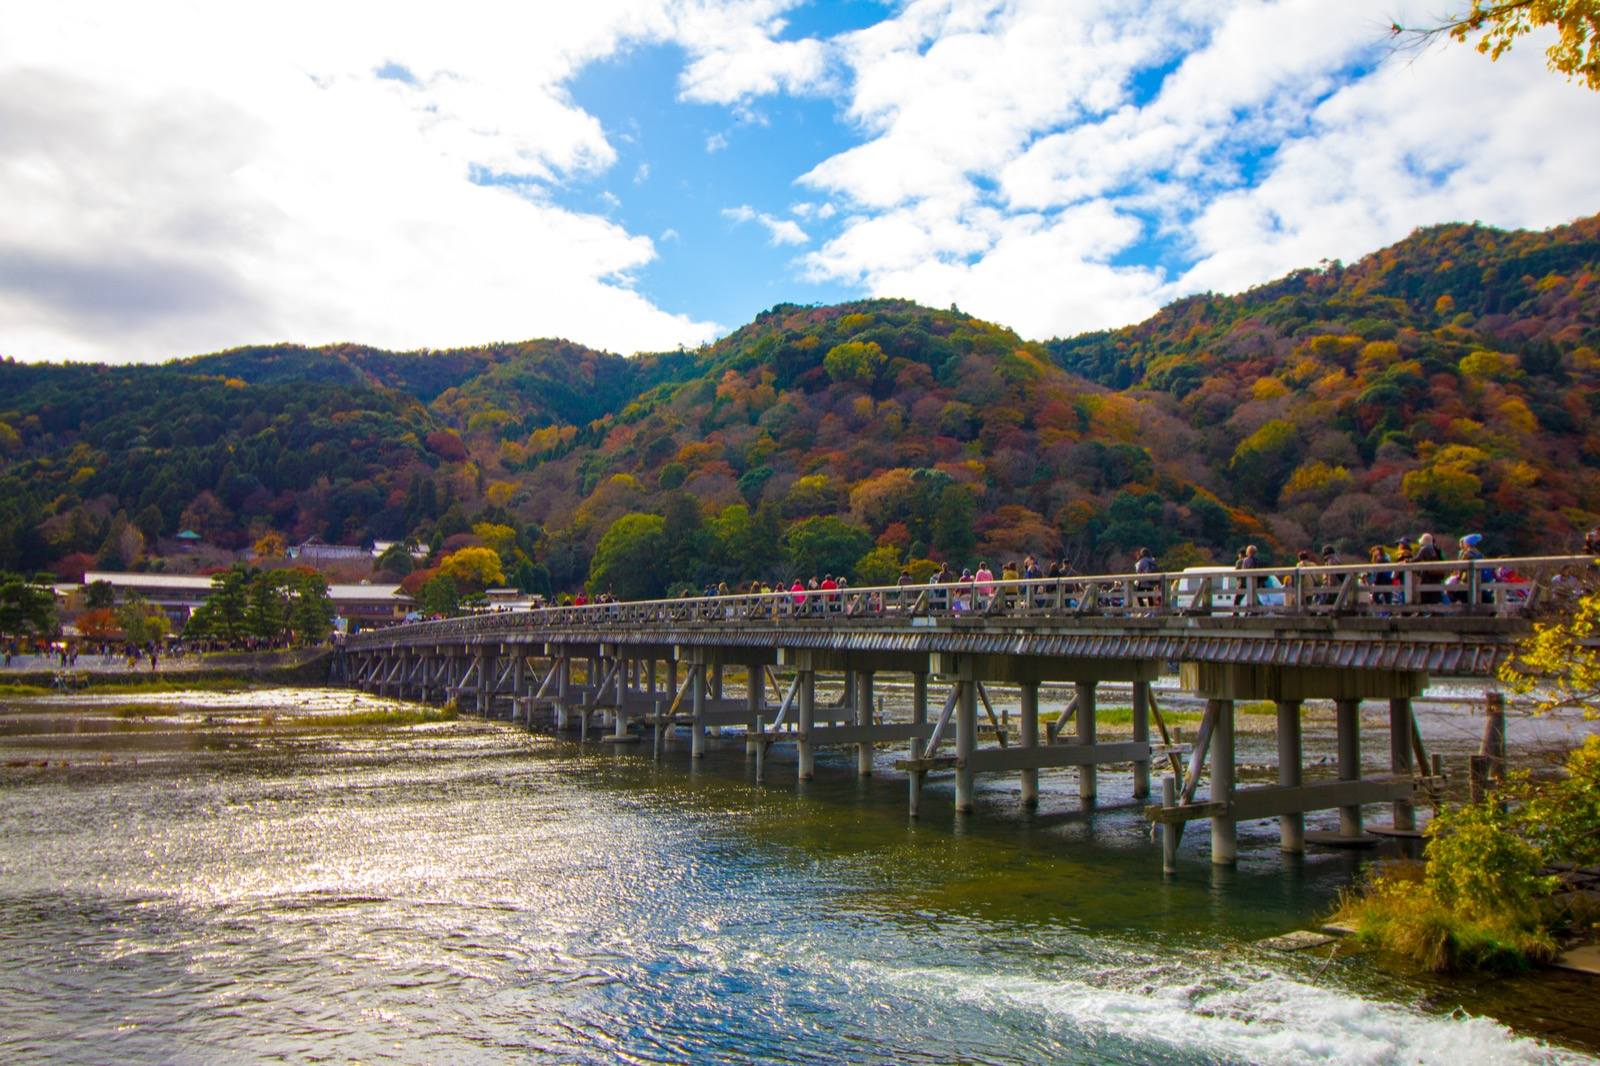 Photo of Togetsu-kyo Bridge, Japan (IMG_5604 by y.ganden)